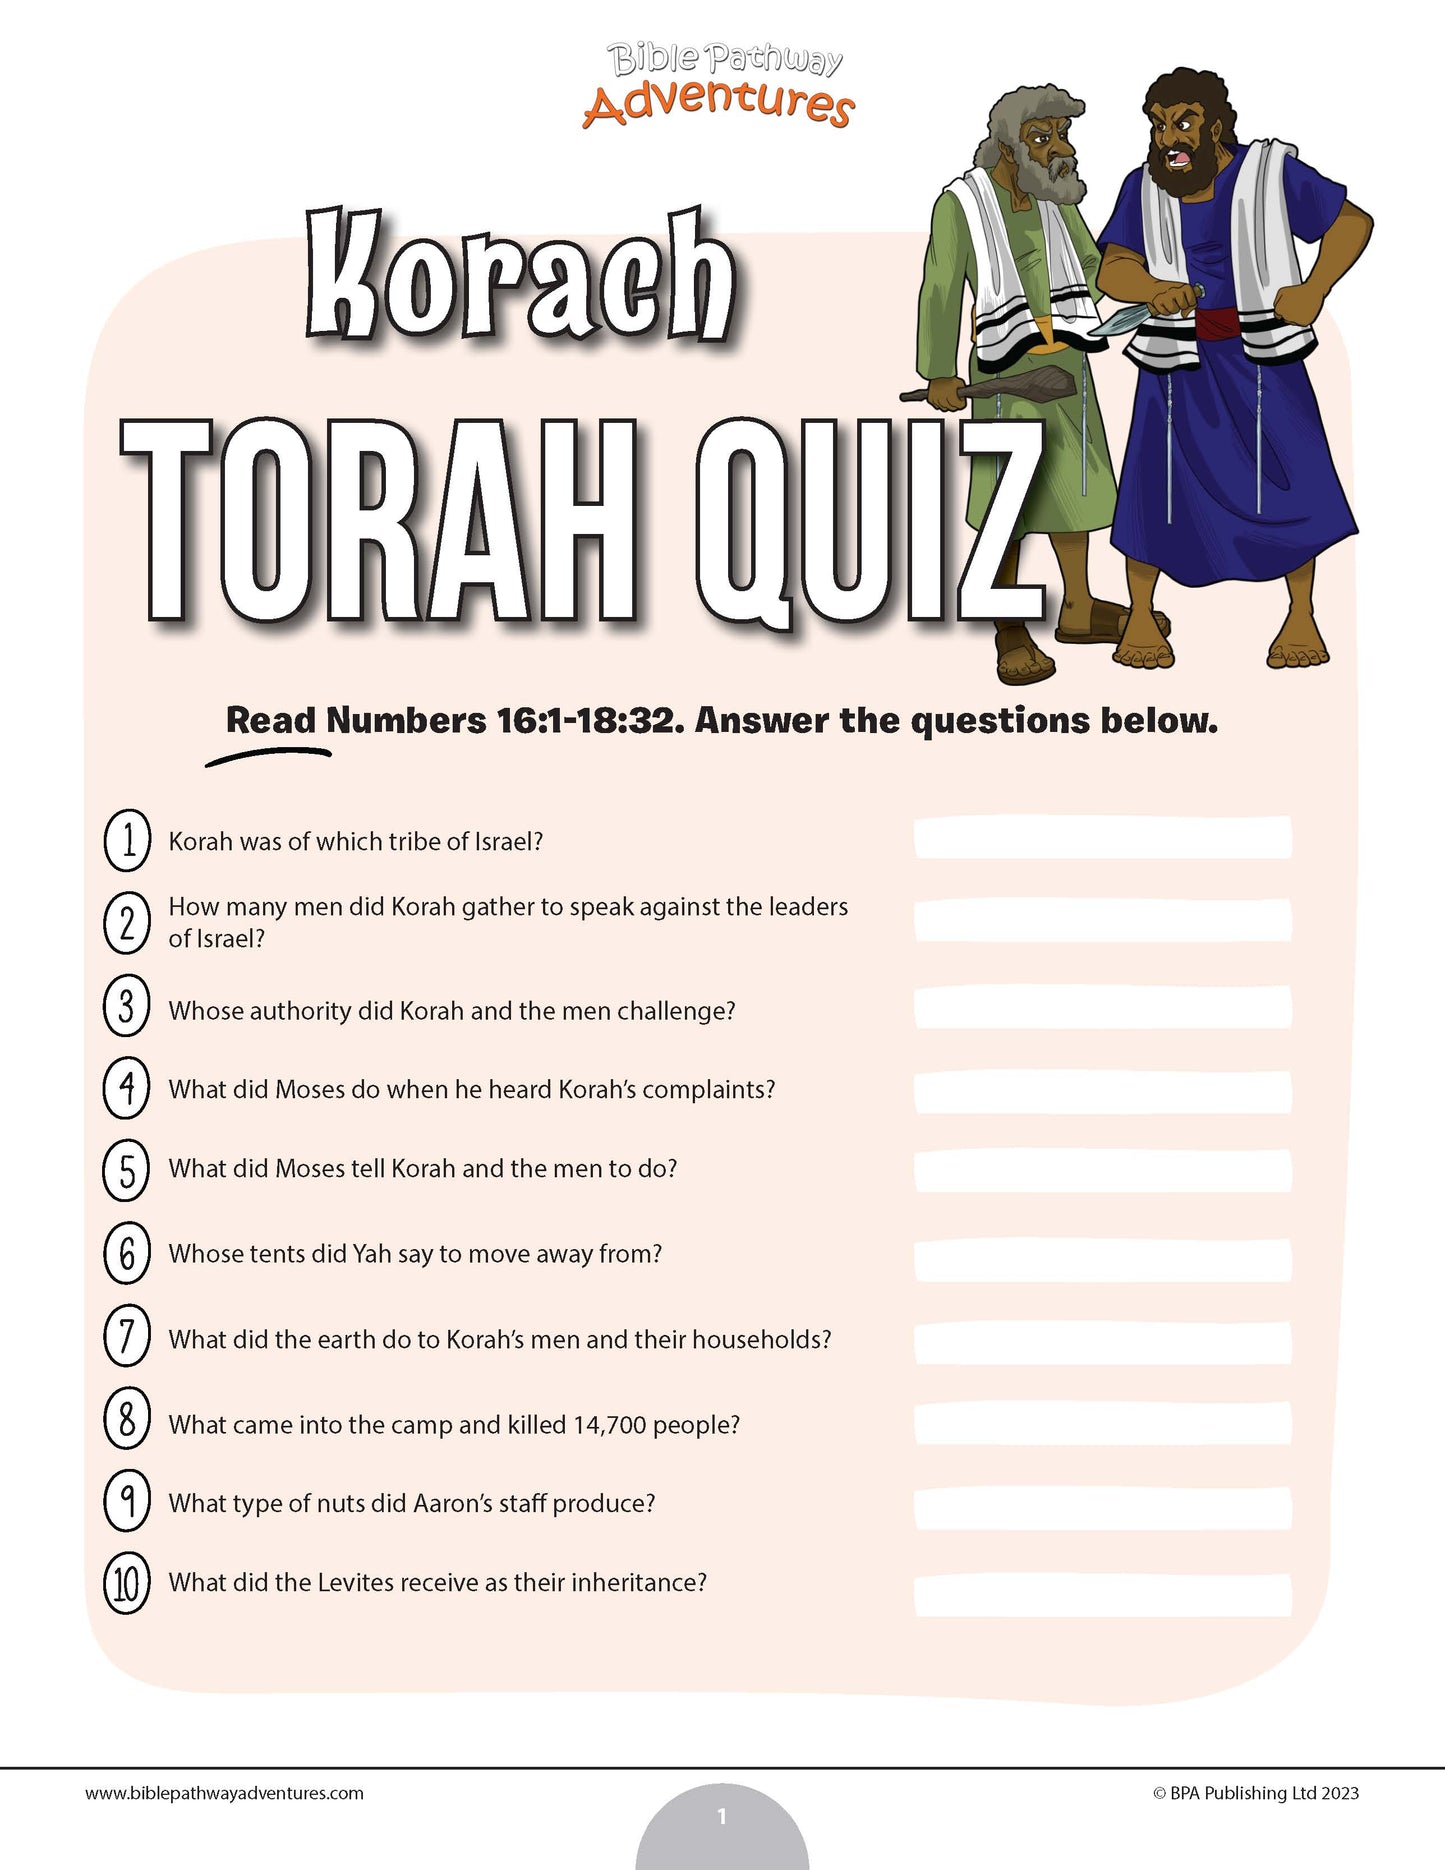 Korach Torah quiz (PDF)